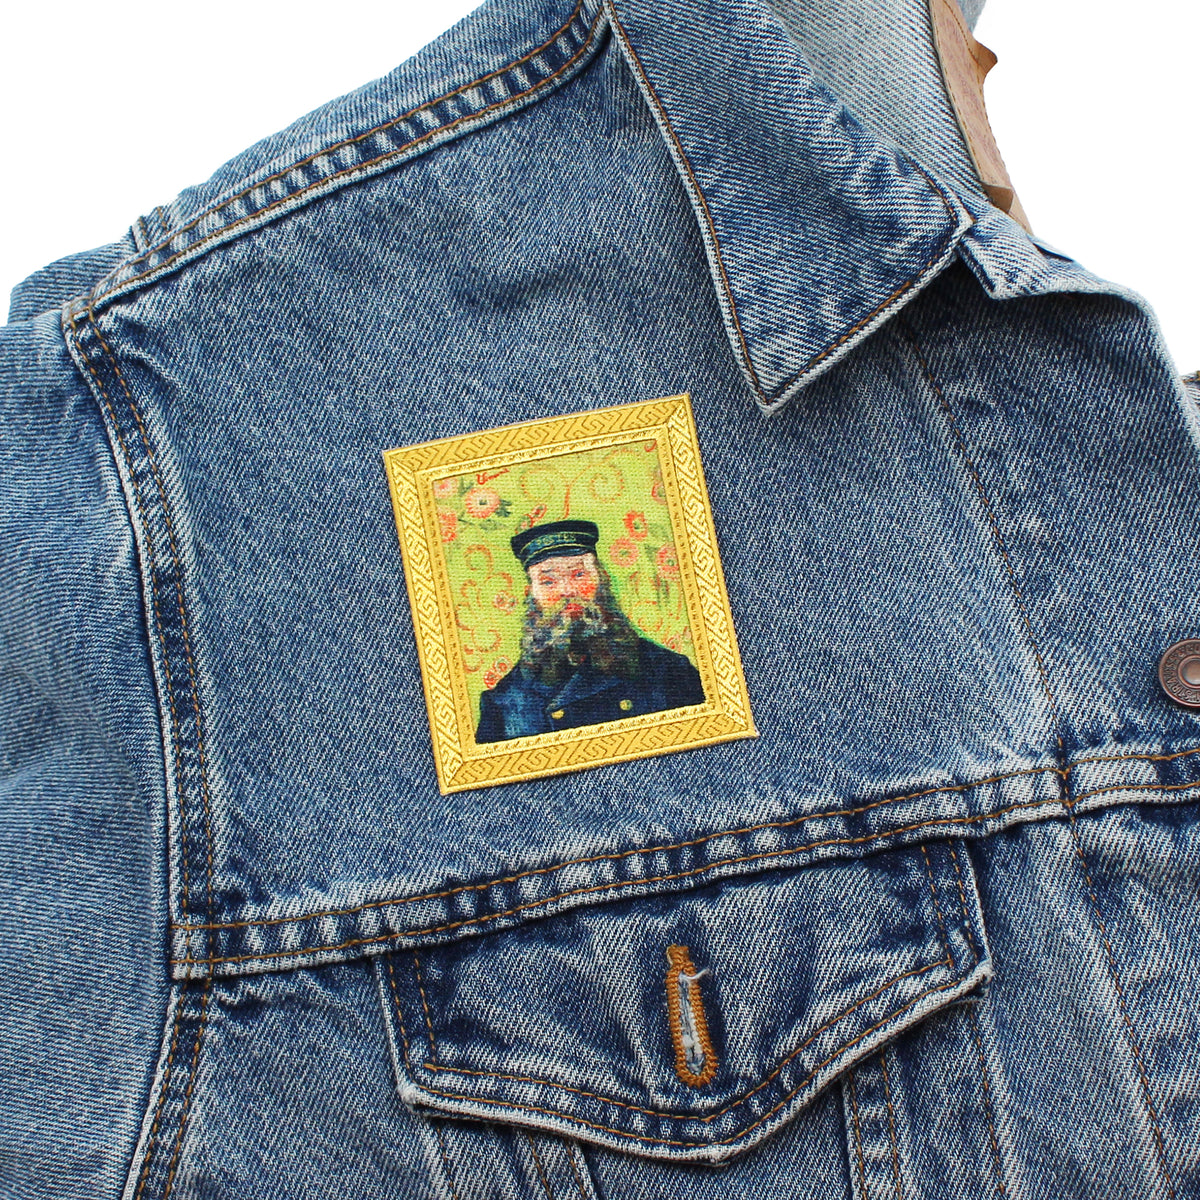 Van Gogh &quot;Postman&quot; artwork patch